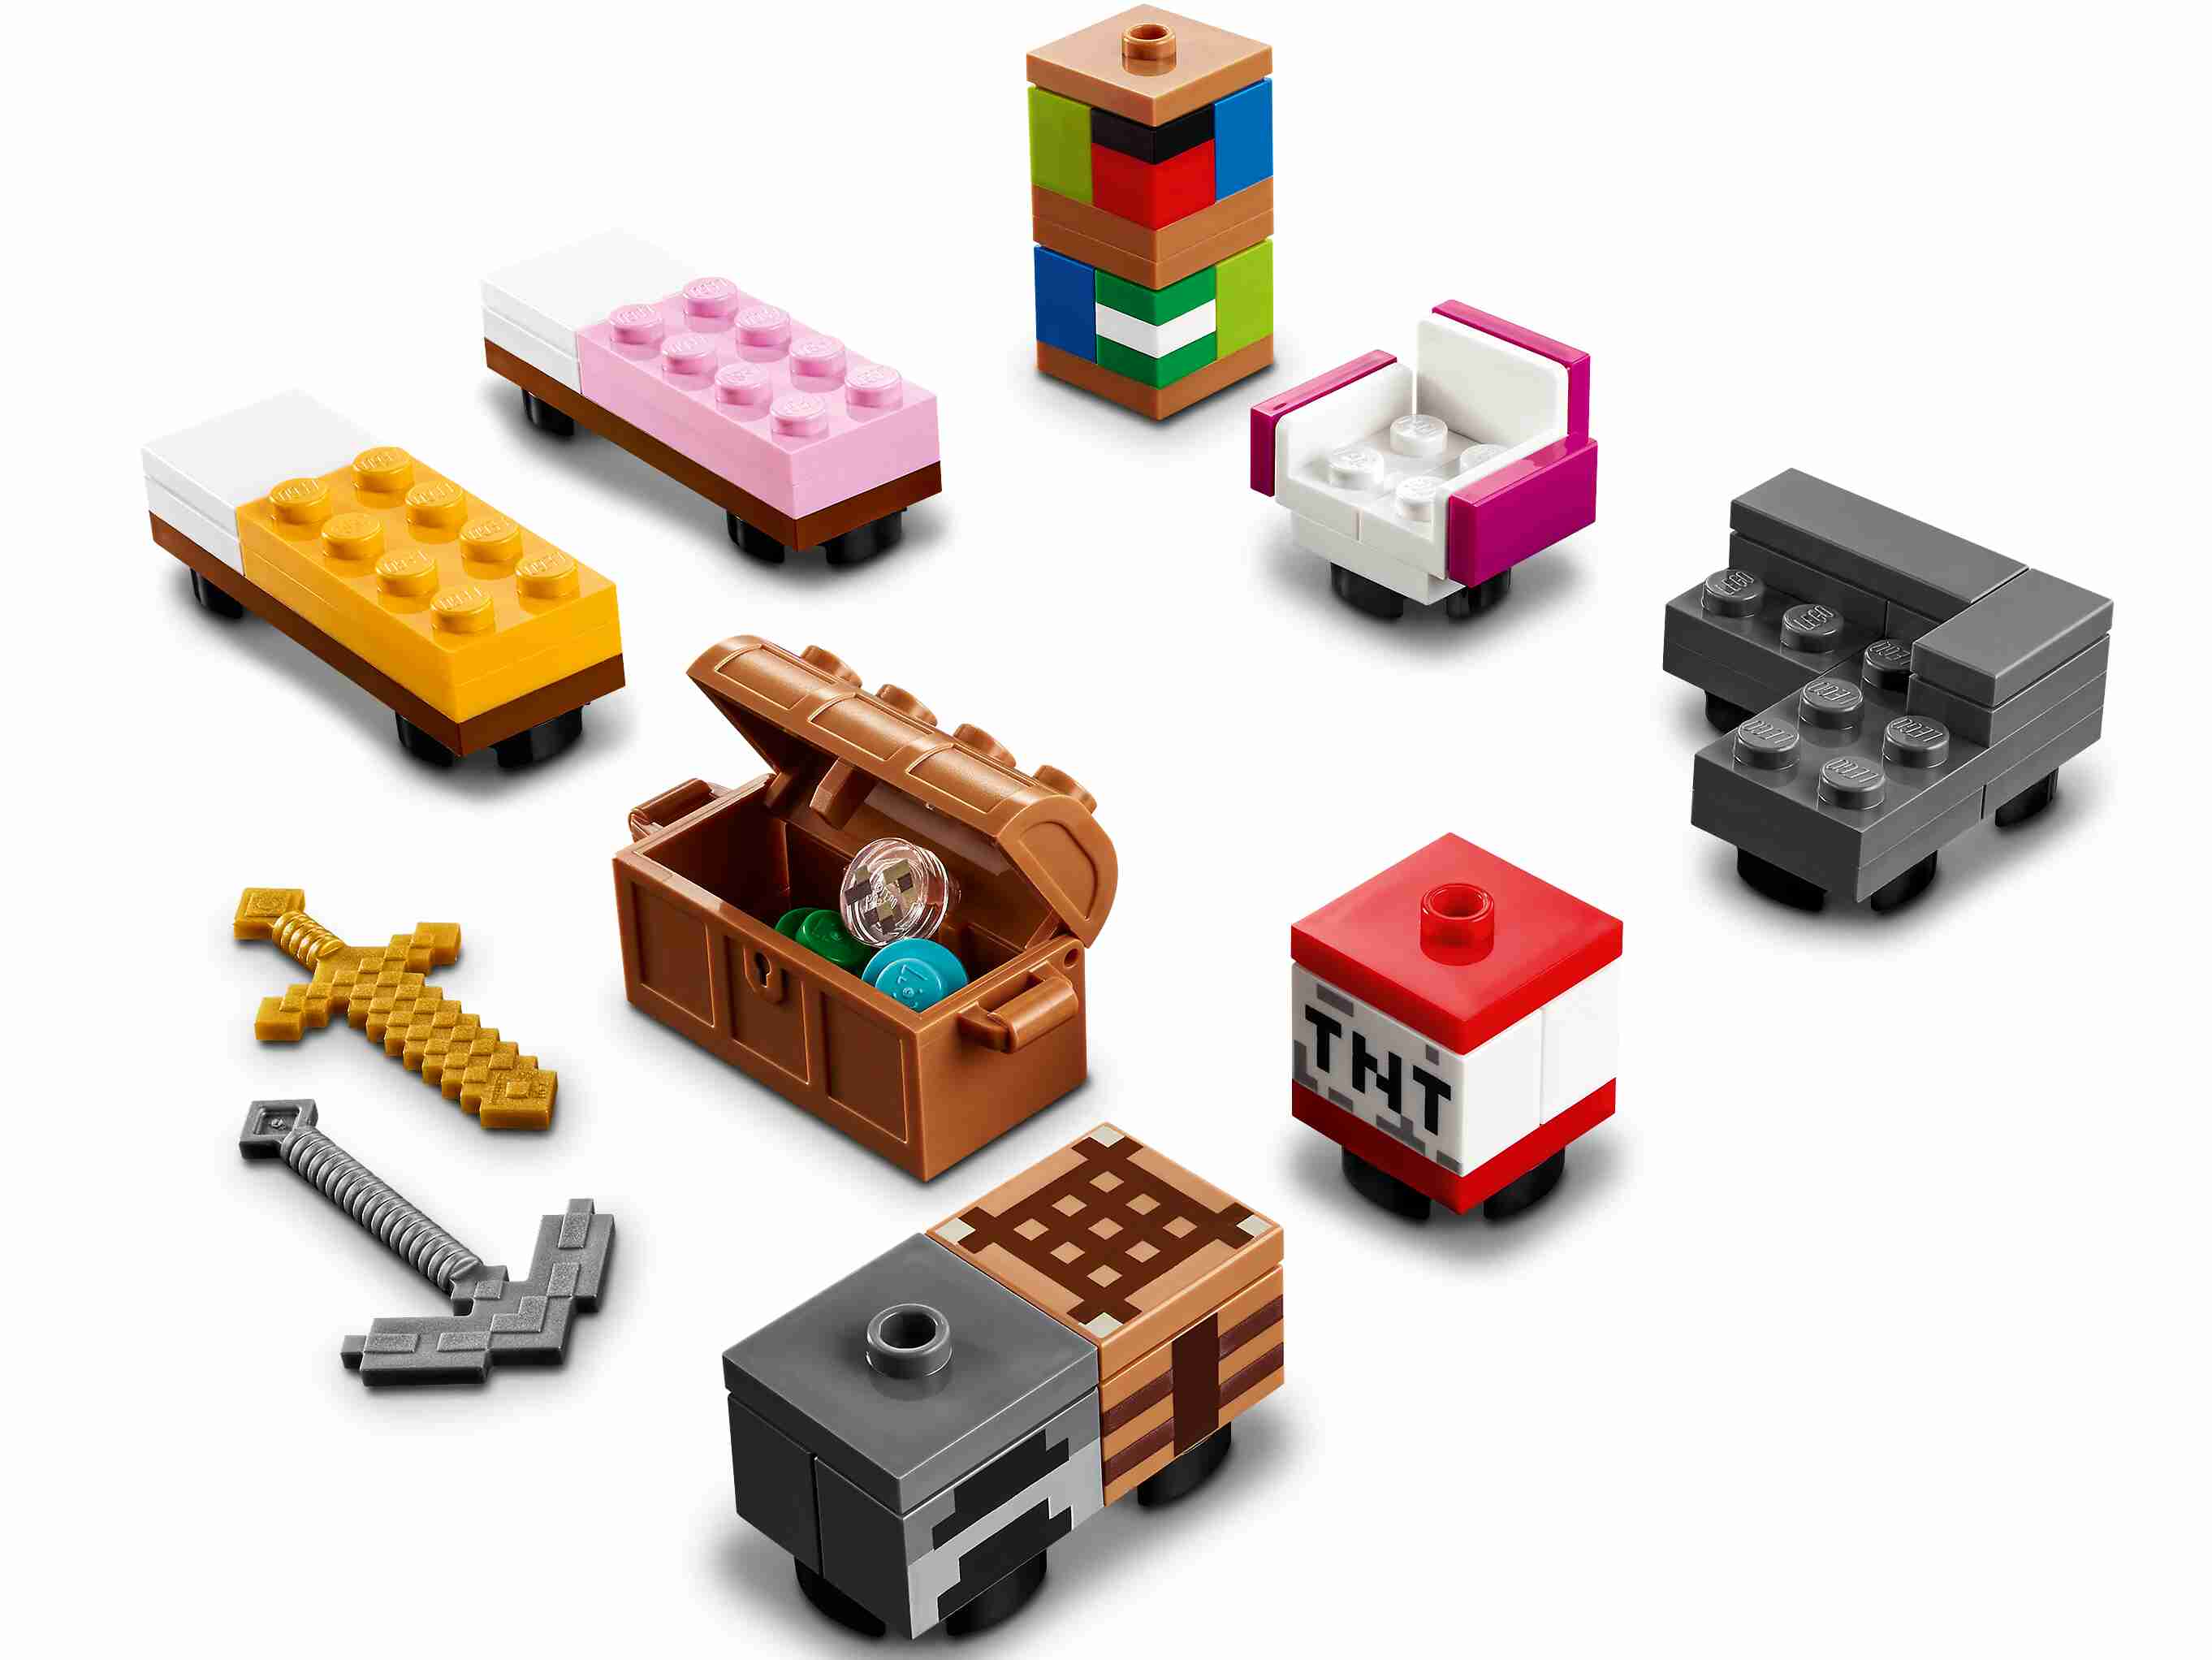 LEGO 21174 Minecraft Das Moderne Baumhaus, vier beliebig umgestaltbaren Räume 